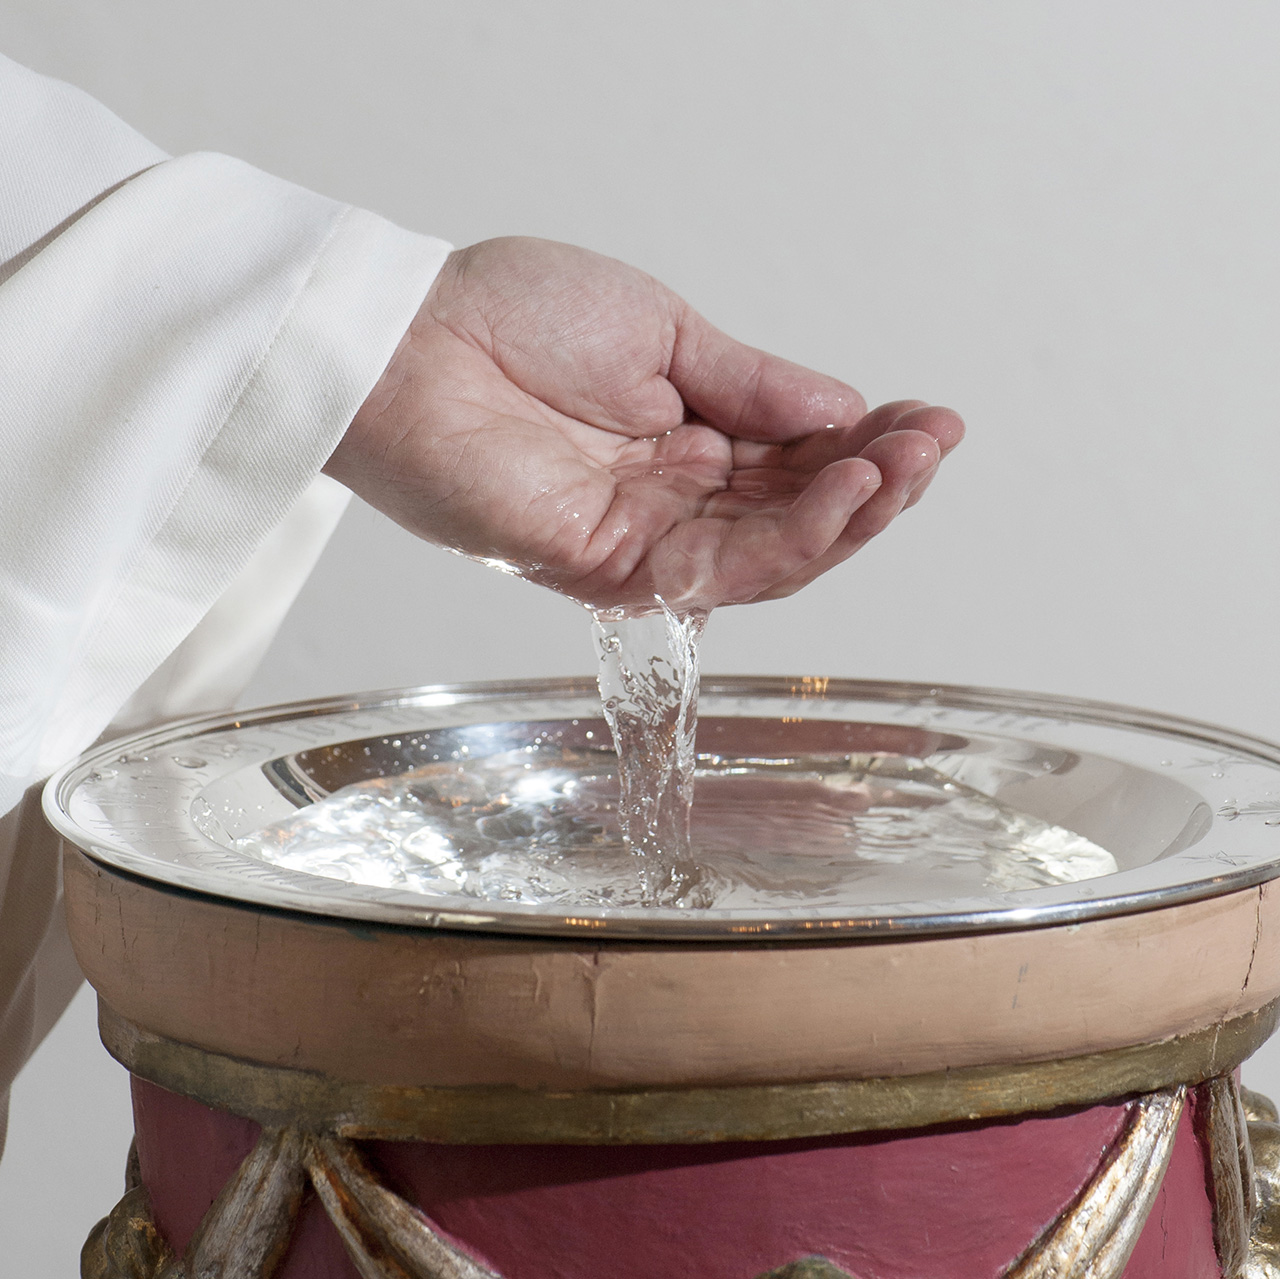 En person har vatten i sin hand och häller ner det i en dopfunt.